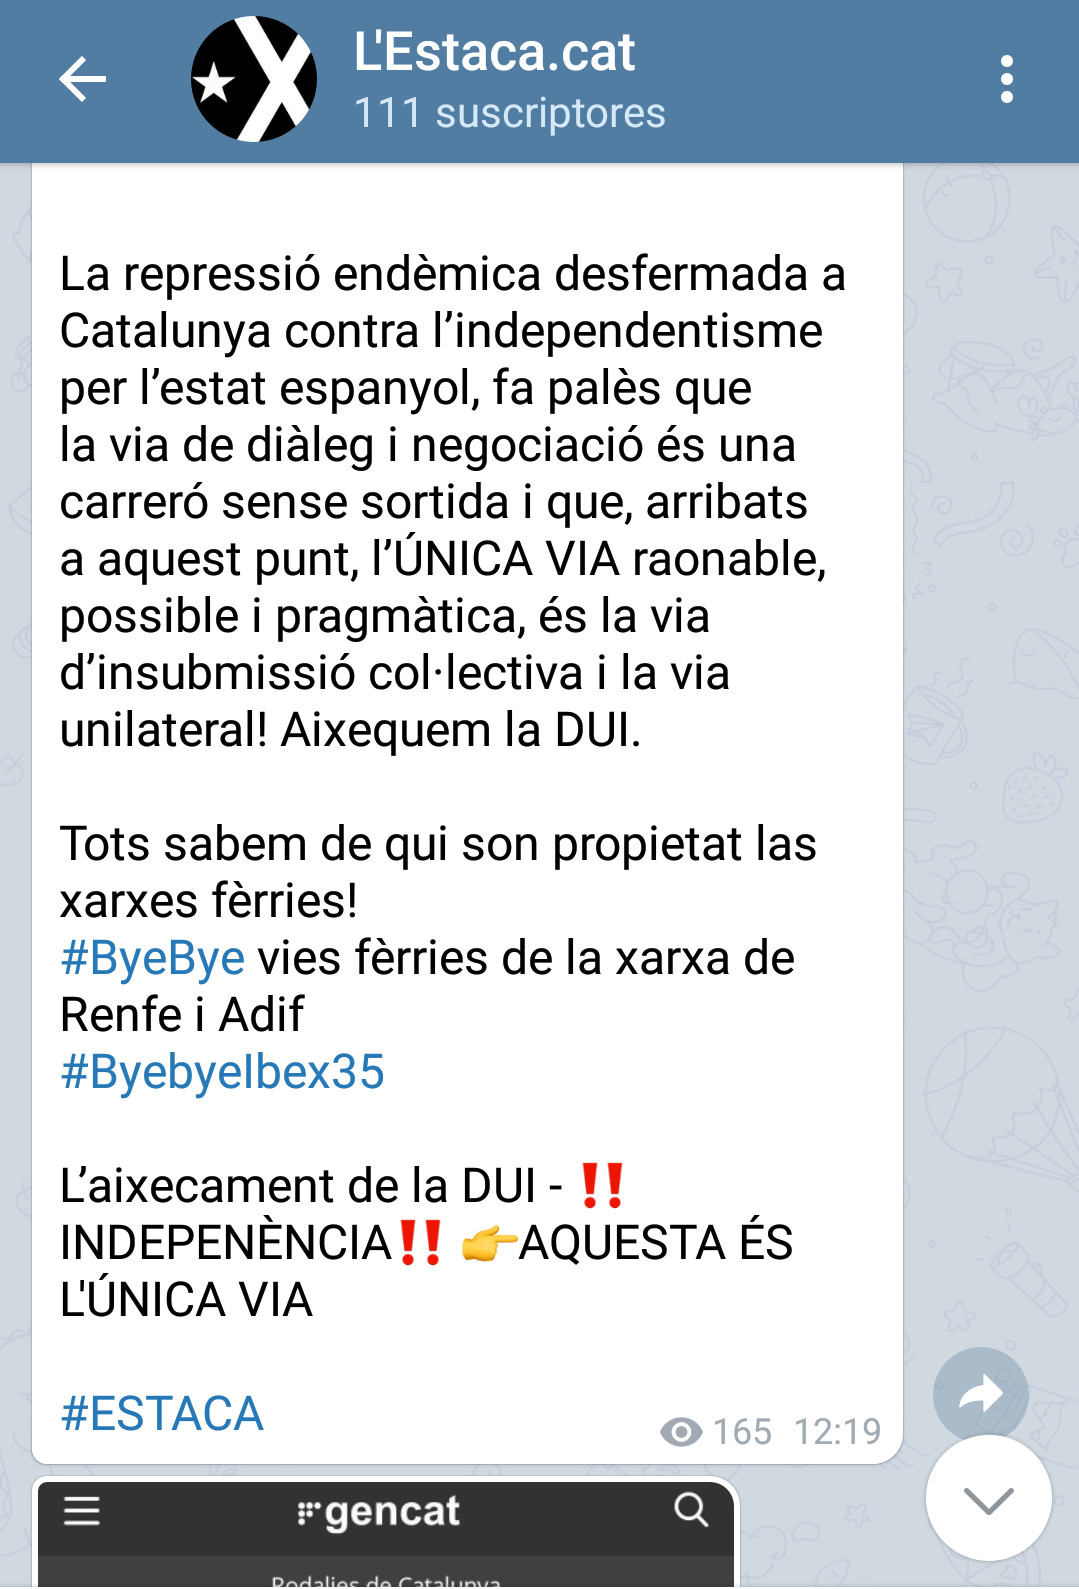 Mensaje del colectivo L'Estaca / TELEGRAM